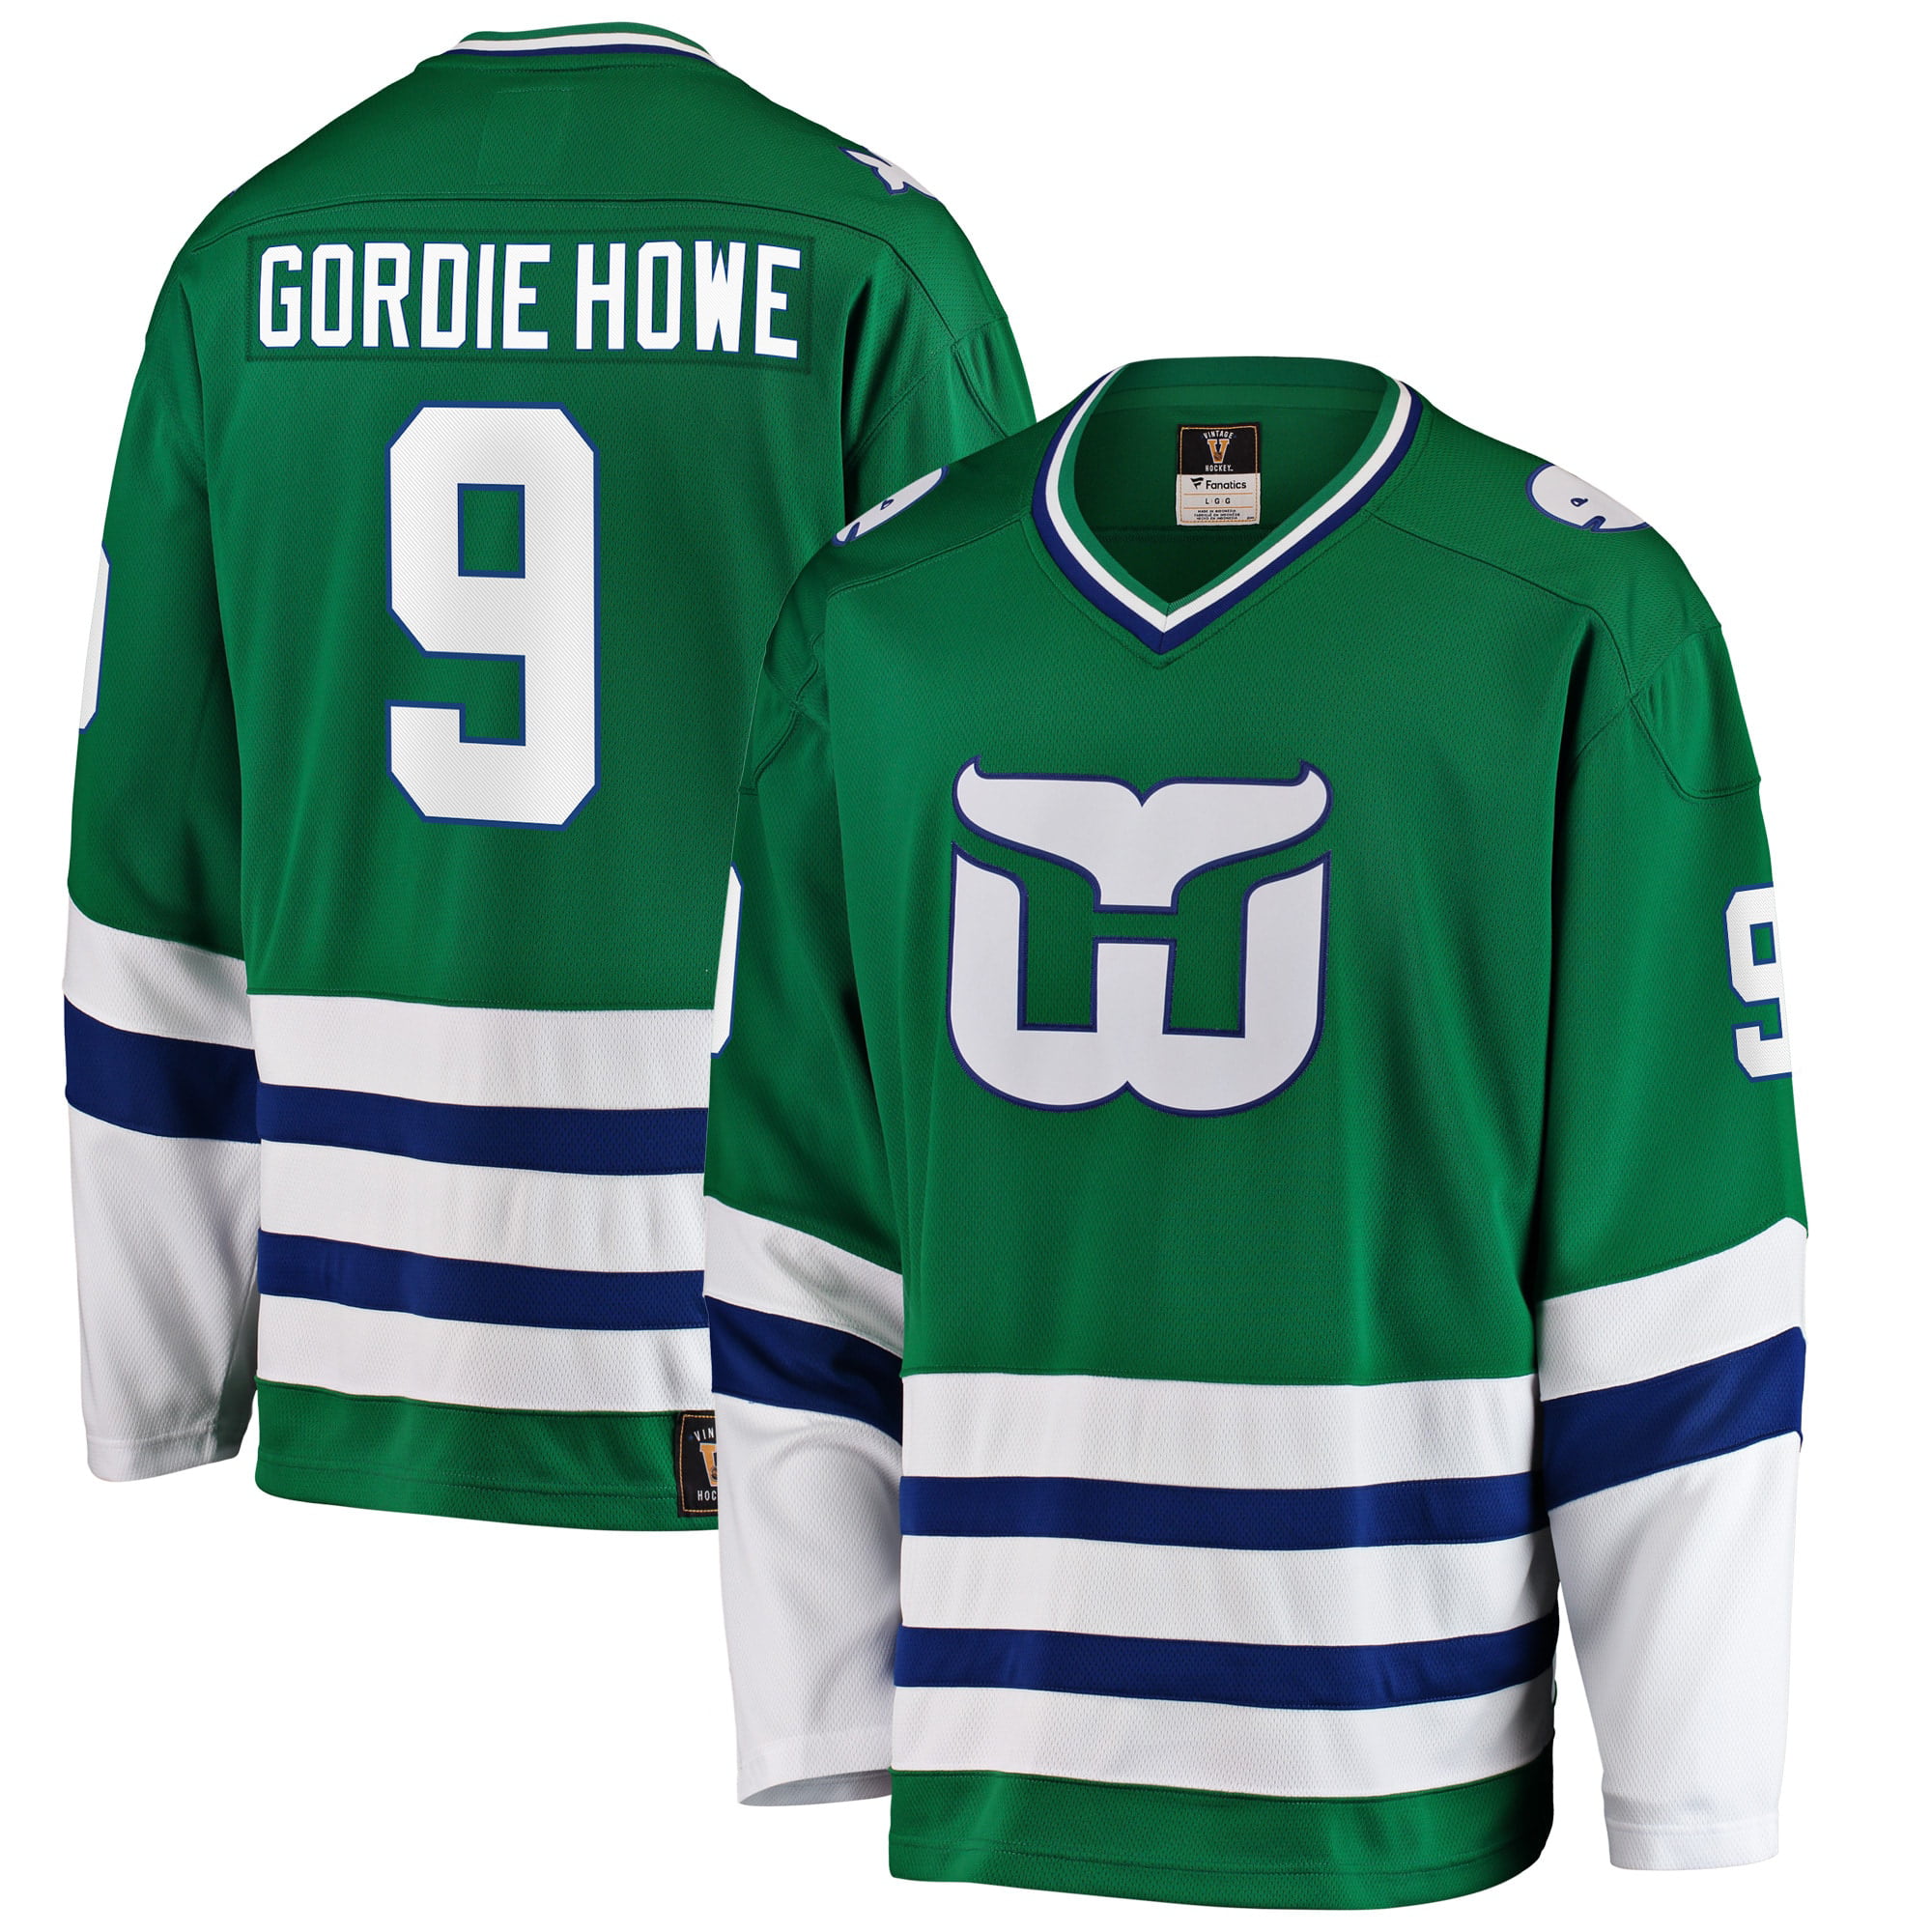 Gordie Howe Jerseys, Gordie Howe Shirts, Apparel, Gear